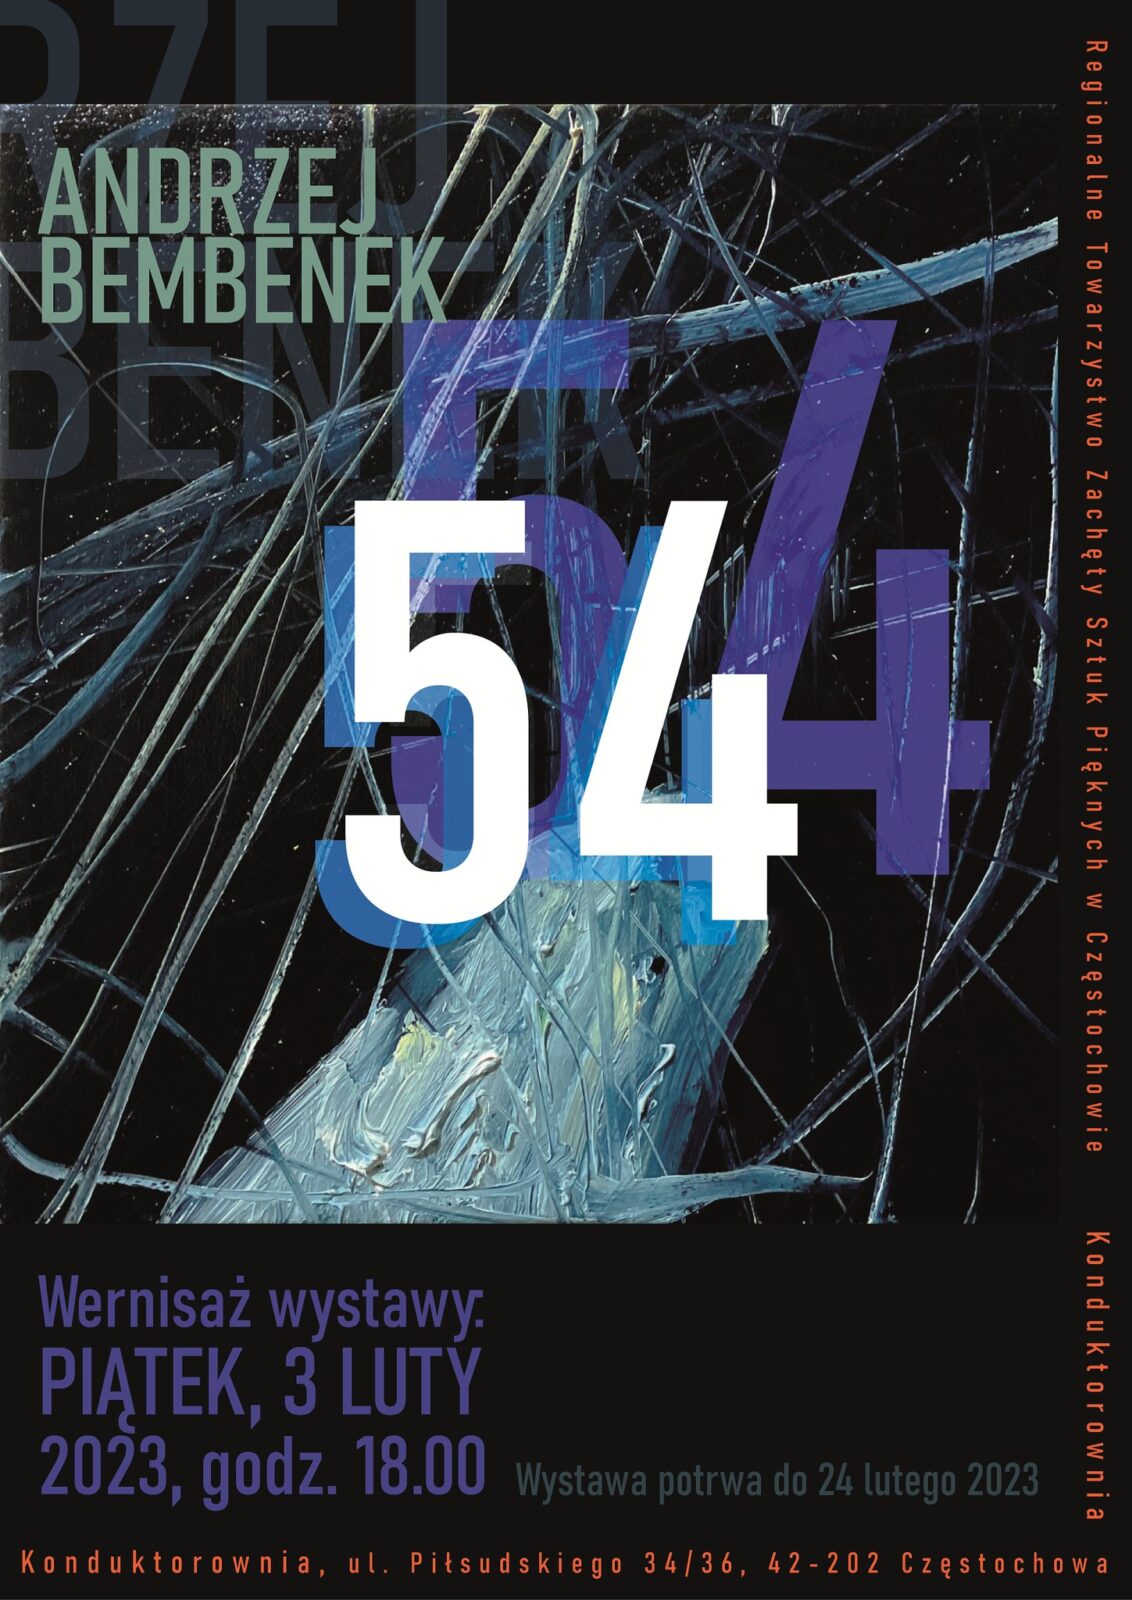 Nowa wystawa w częstochowskiej Konduktorowni. To "54" Andrzeja Bembenka 1